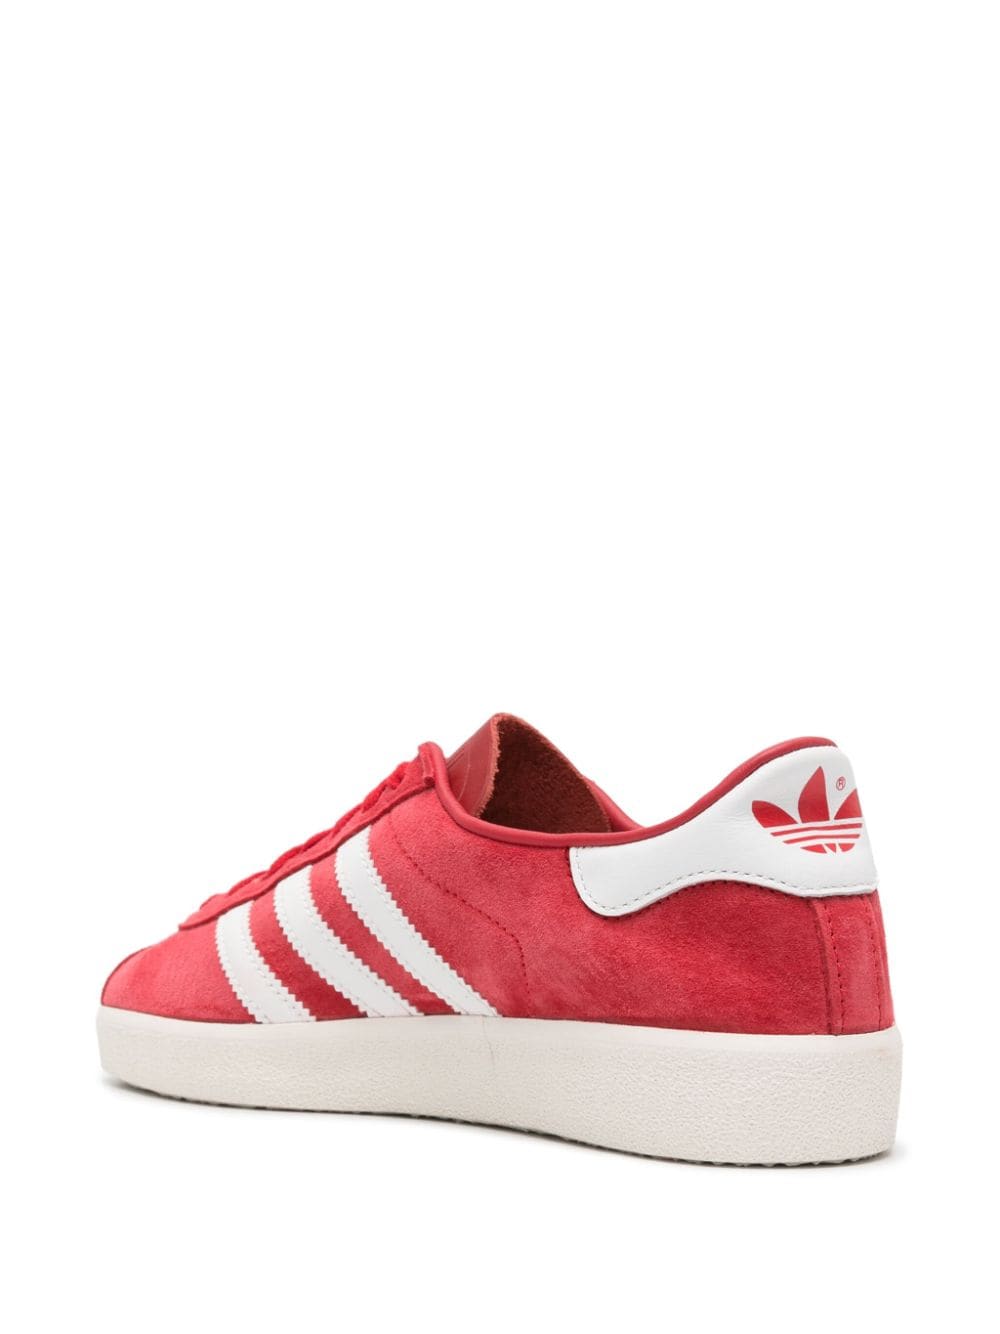 Shop Adidas Originals Gazelle Decon Suede Sneakers In Red